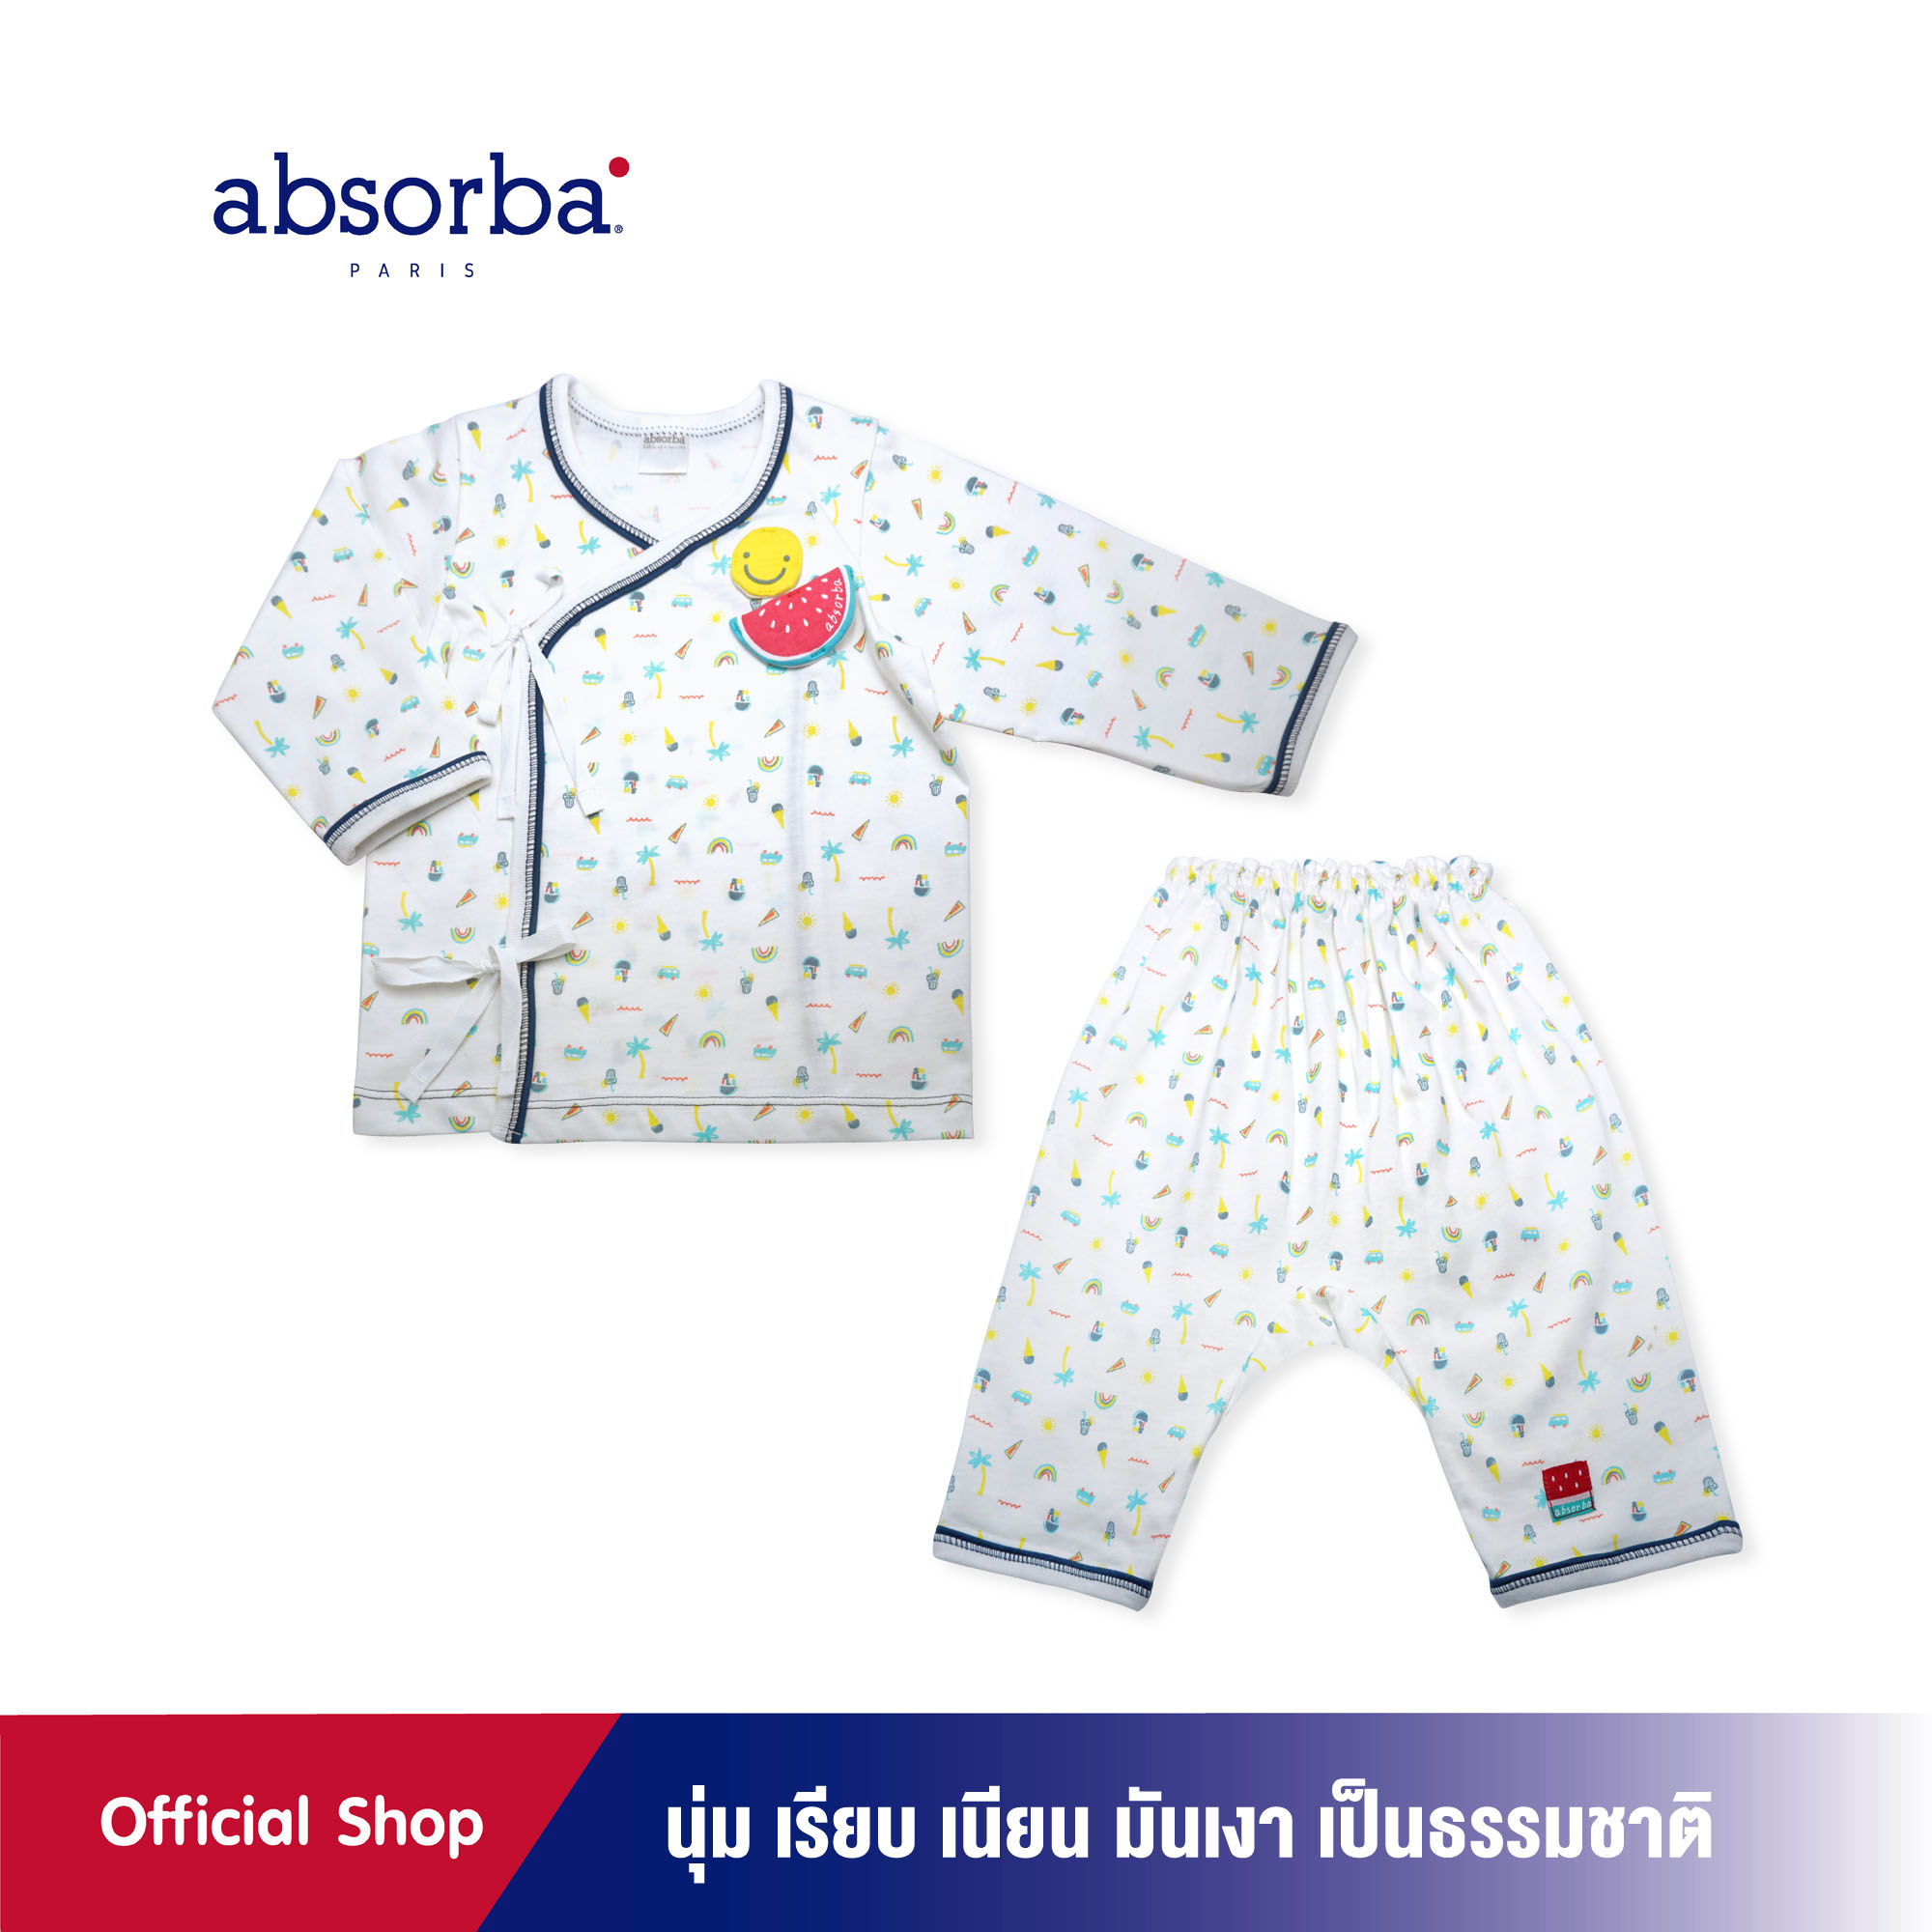 absorba (แอ๊บซอร์บา) ชุดเสื้อป้ายเด็กอ่อน หรือ ชุดเสื้อผูกหน้าเด็กอ่อน แขนยาว คอลเลคชั่น Ice Cream สำหรับเด็กแรกเกิดถึง 12 เดือน - R1C5002TU ชุดเด็กผู้ชาย